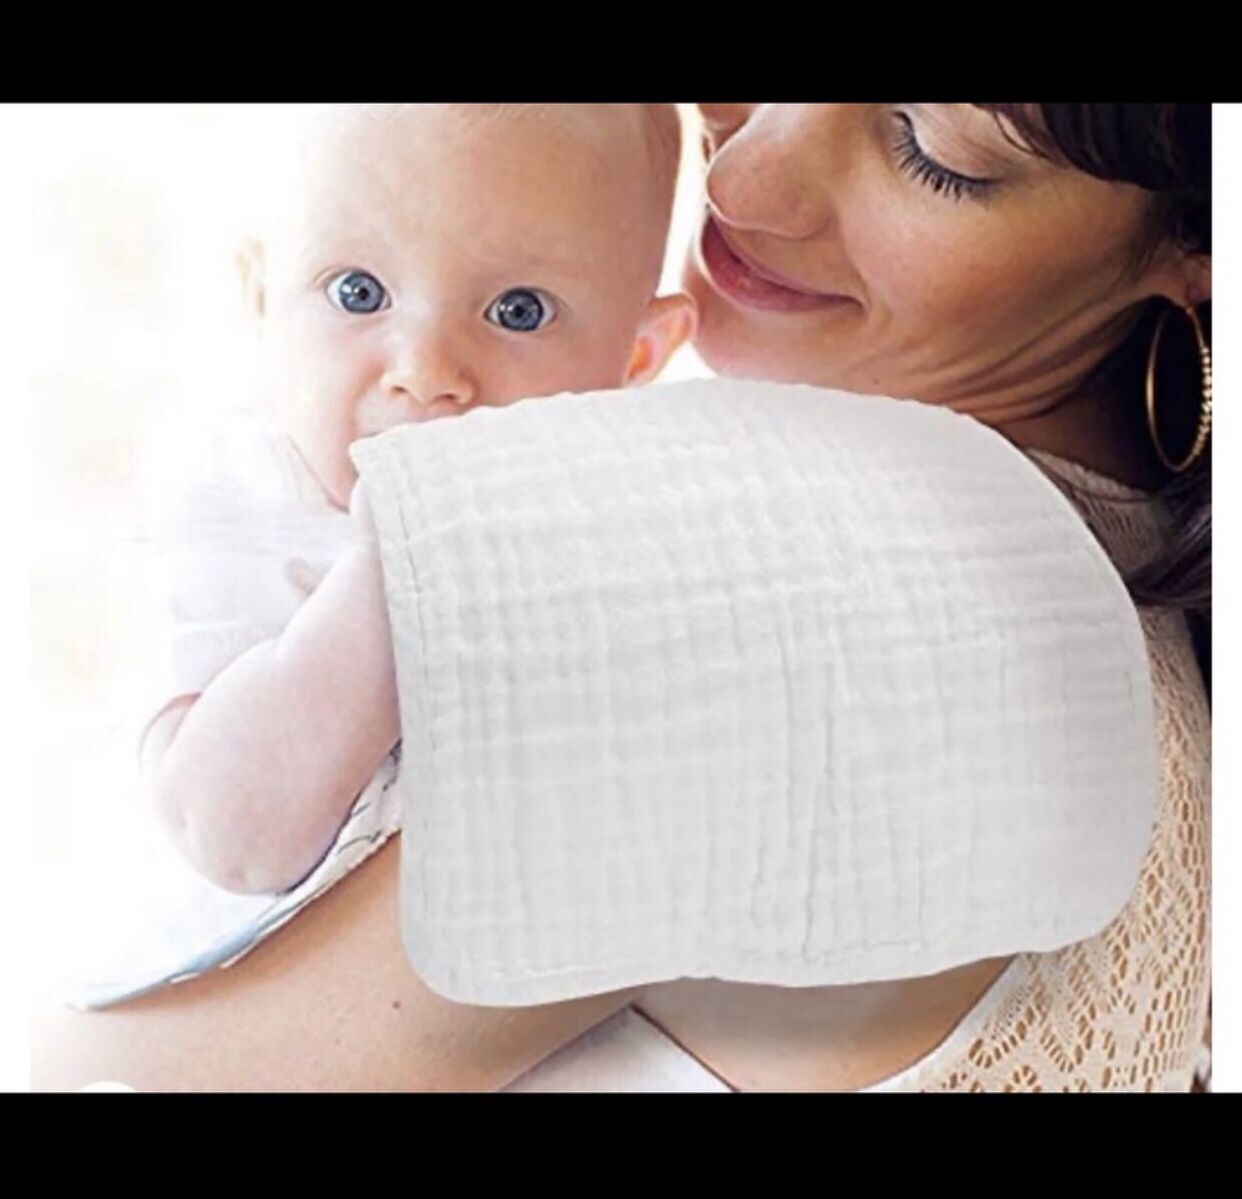 NWOT & GUC White Cotton Muslin Infant Burp Cloth Bundle